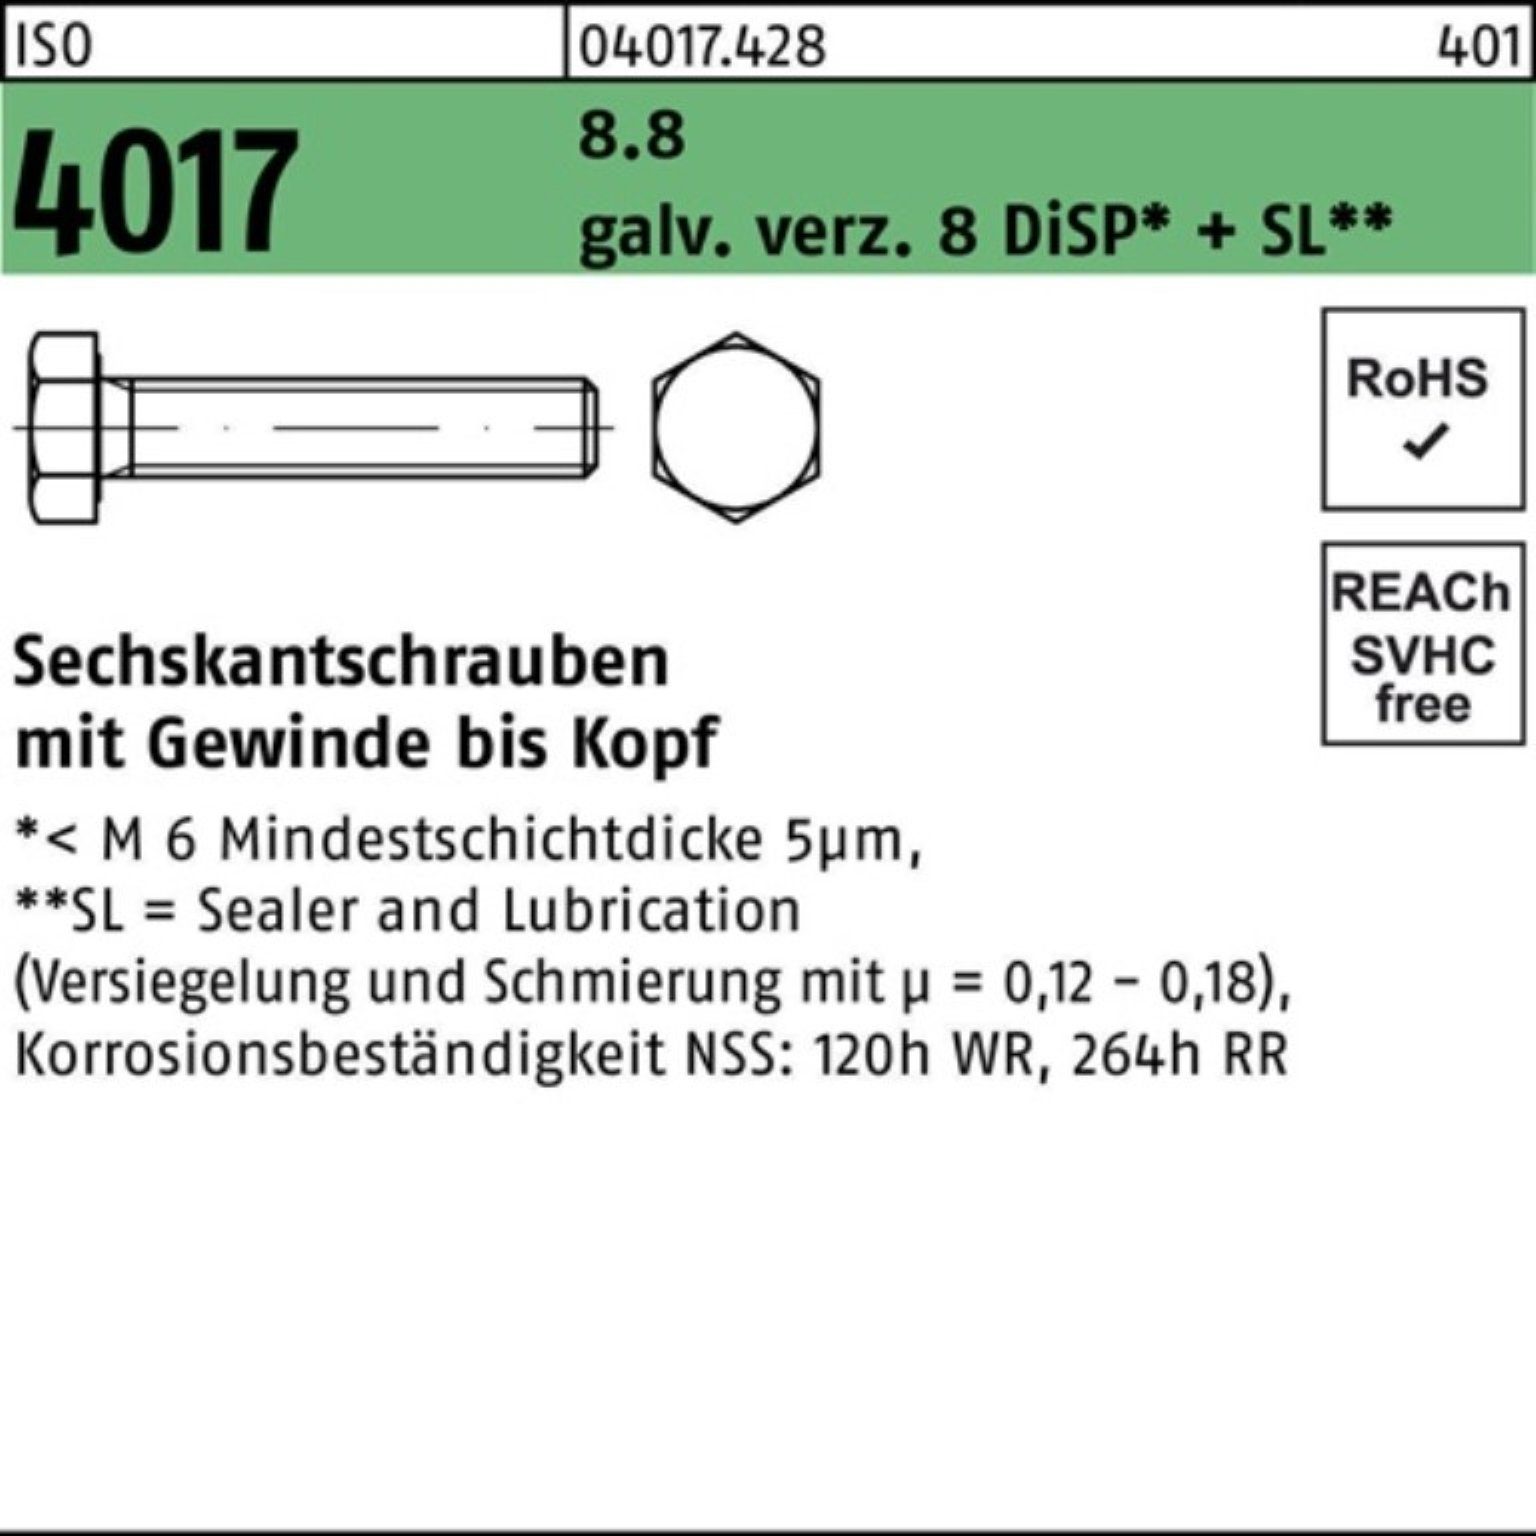 Bufab Sechskantschraube 500er 4017 Sechskantschraube 8.8 10 DiSP+ M5x 8 galv.verz. Pack ISO VG